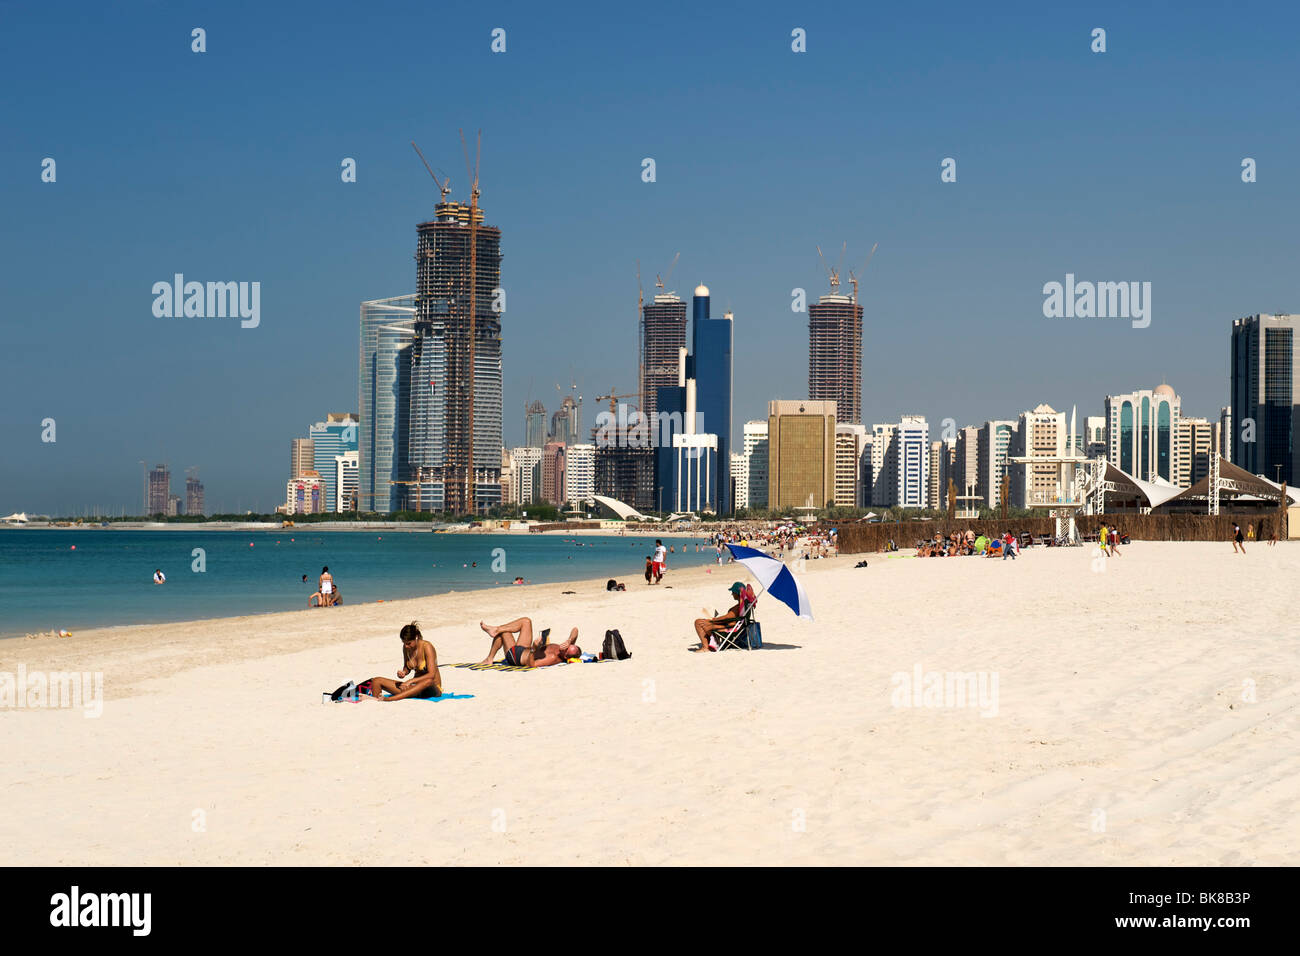 Der Strand und die Gebäude in Abu Dhabi in den Vereinigten Arabischen Emiraten. Stockfoto